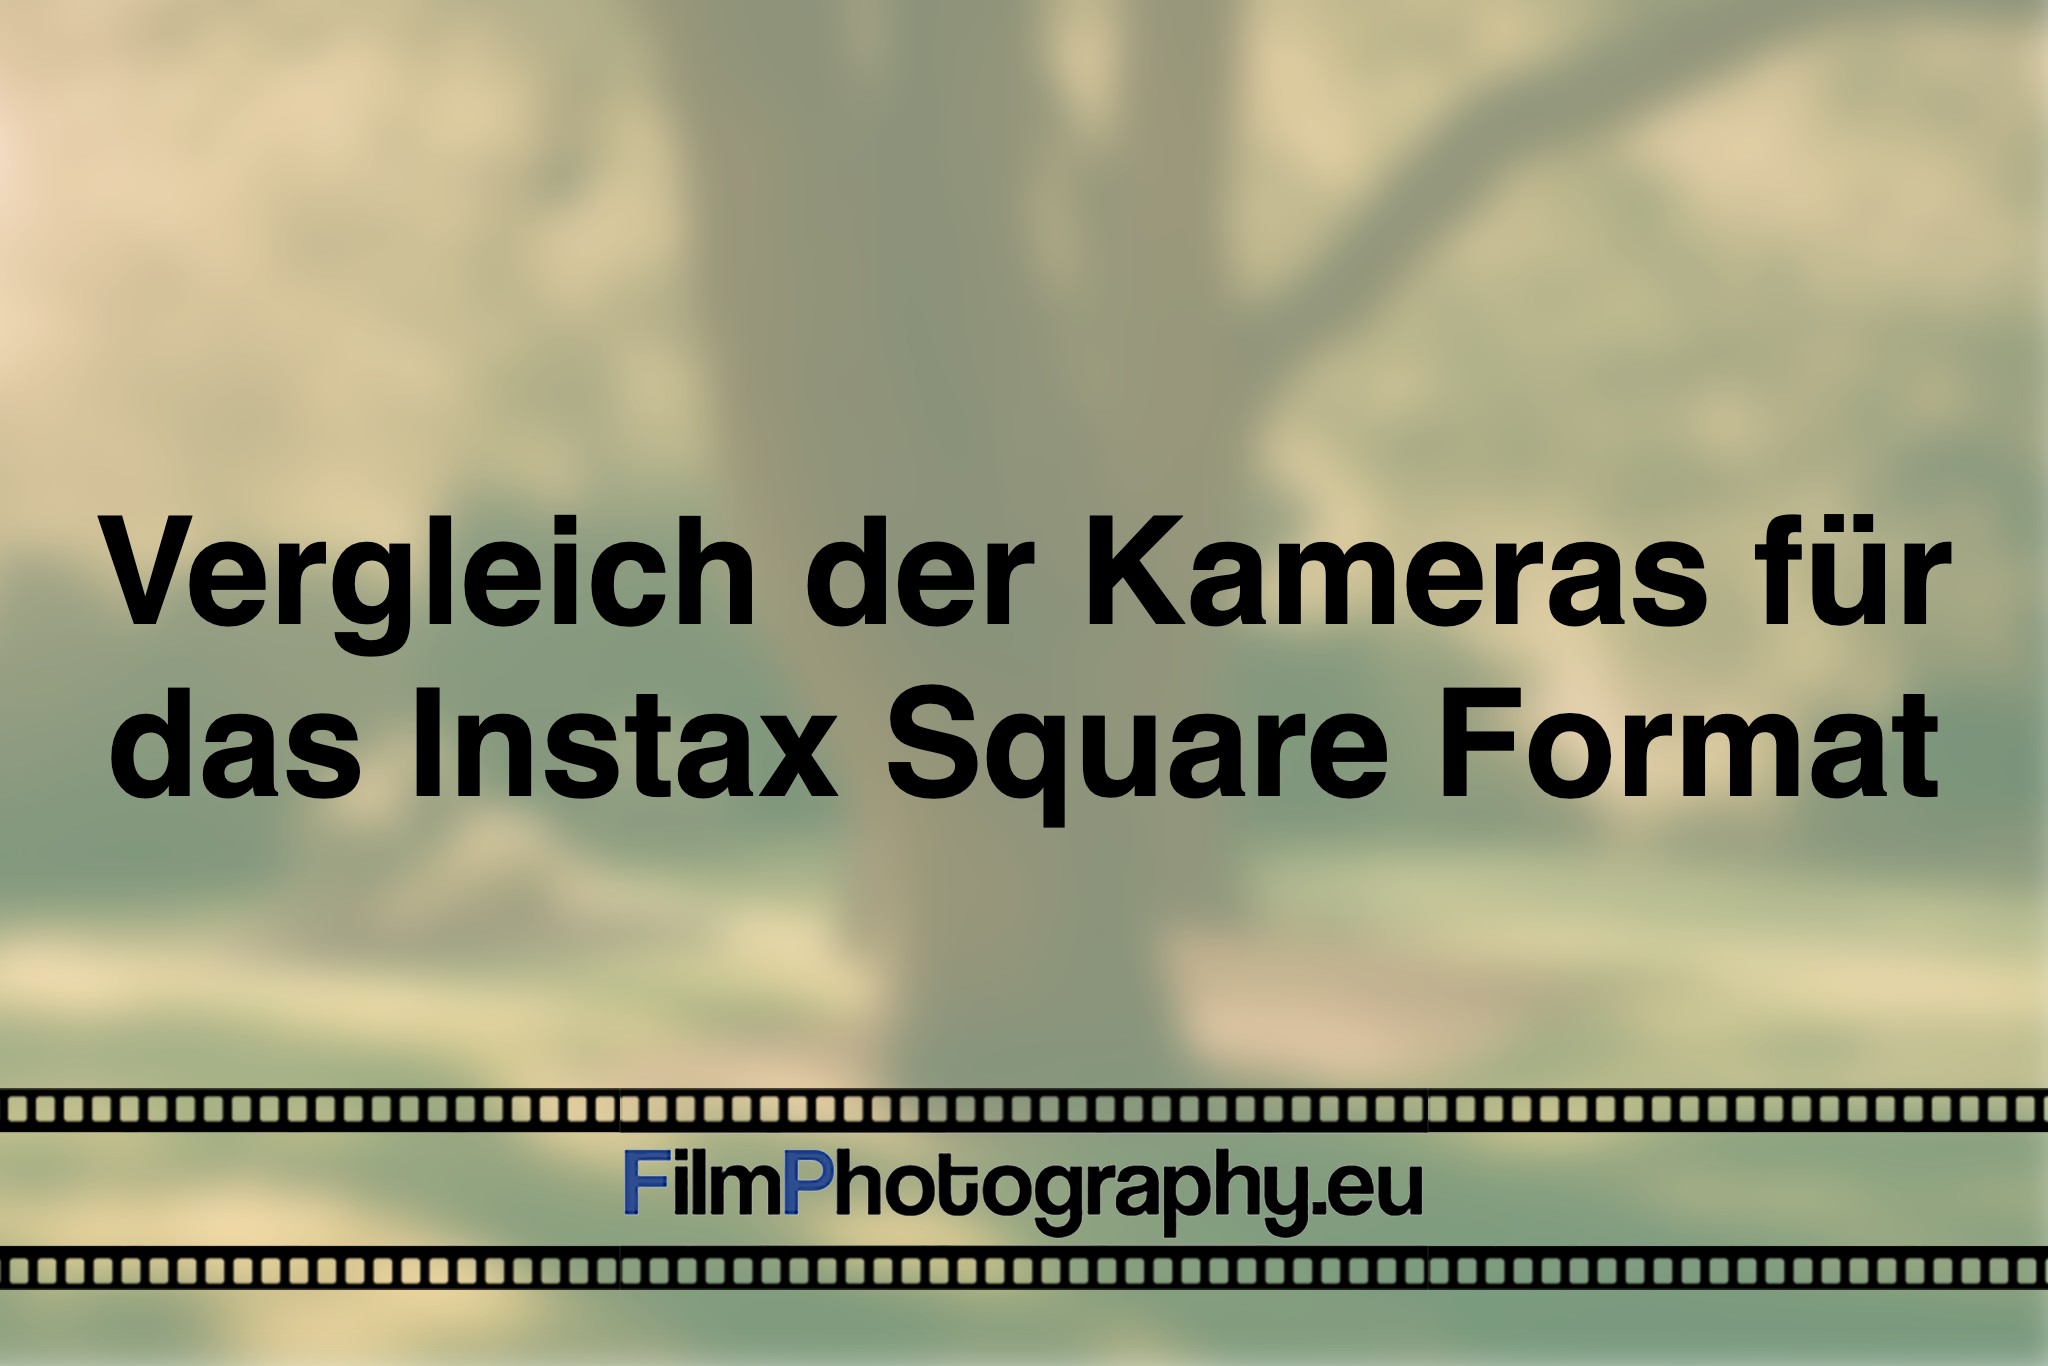 vergleich-der-kameras-fuer-das-instax-square-format-photo-bnv